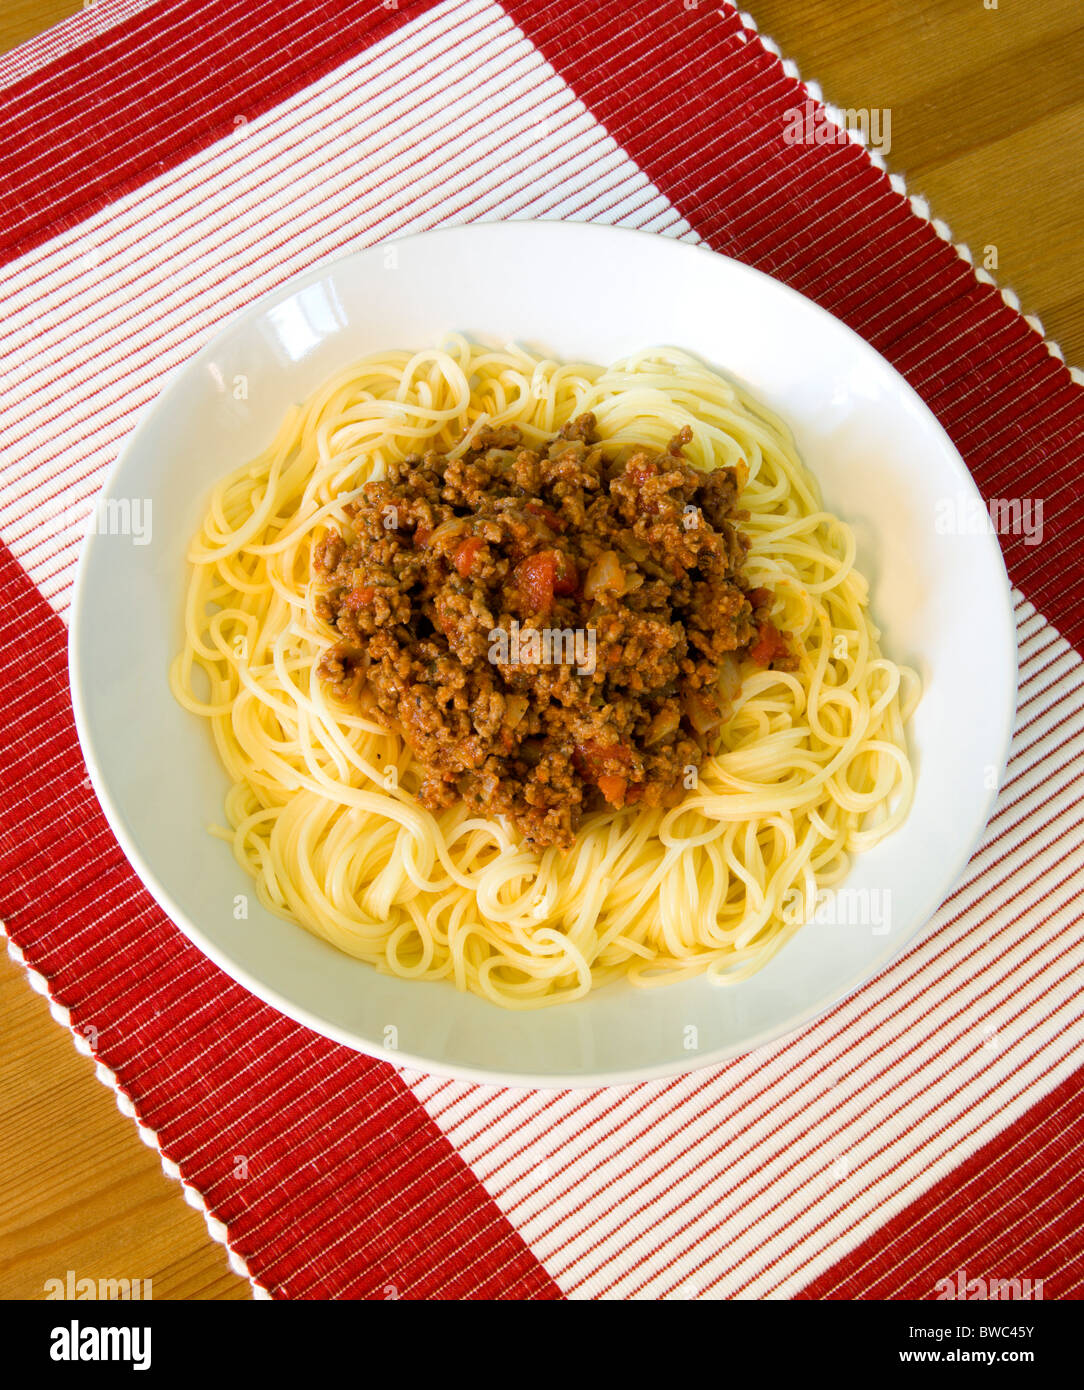 Comida, cocinada, pasta, espaguetis a la Boloñesa en un recipiente sobre una mesa. Foto de stock